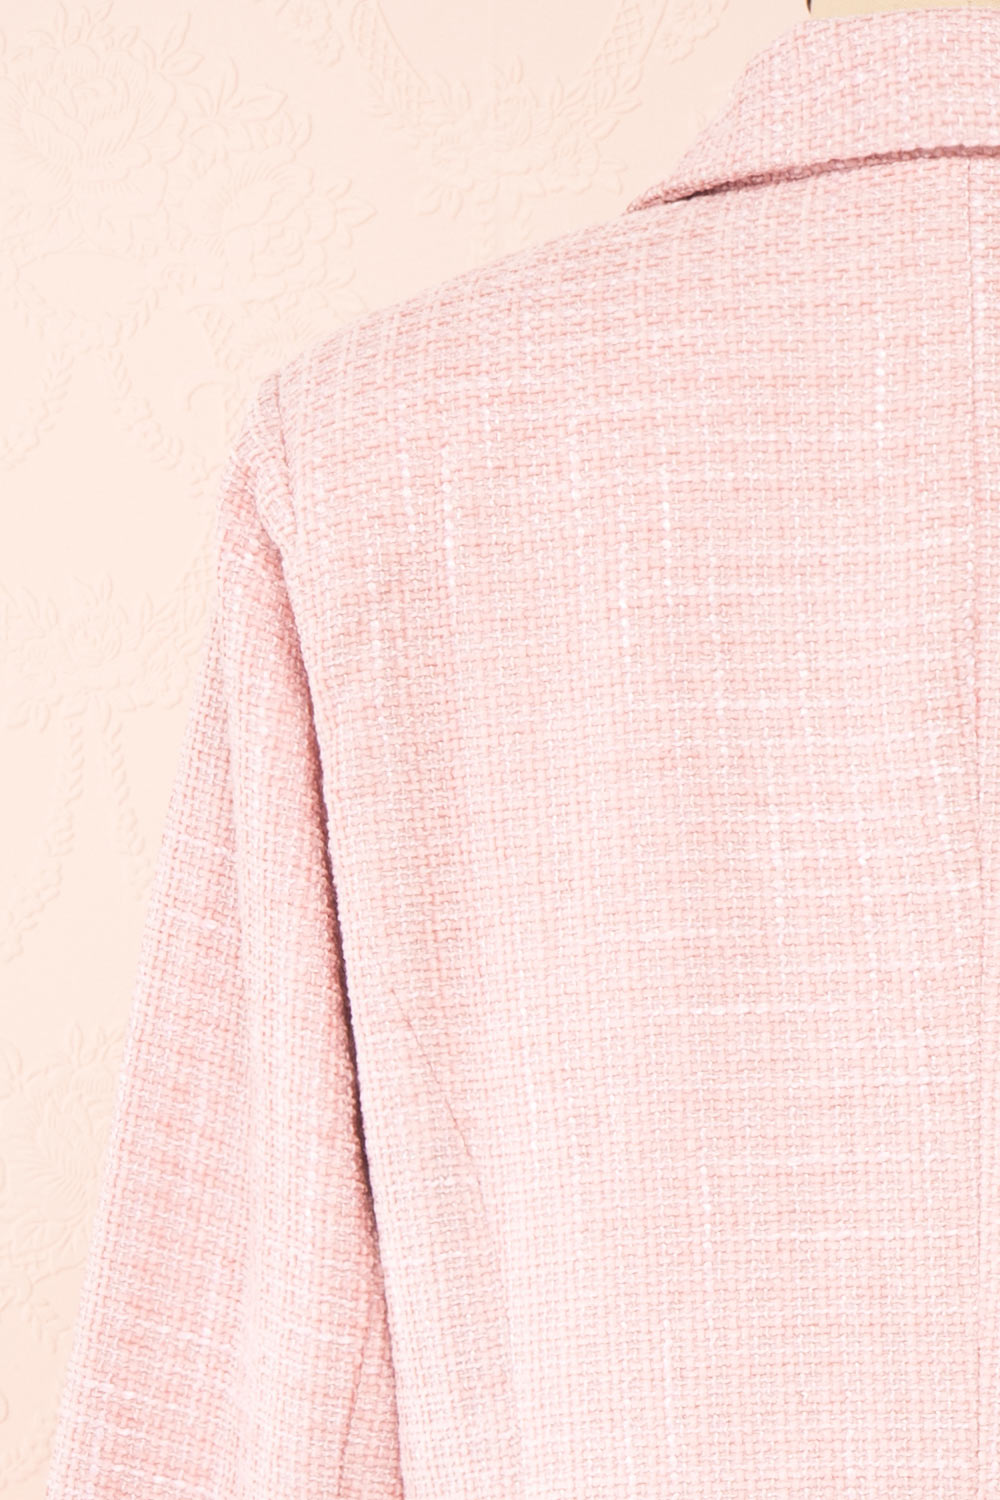 Women's Hot Pink Blazer for Sale - ShopUNIQUES